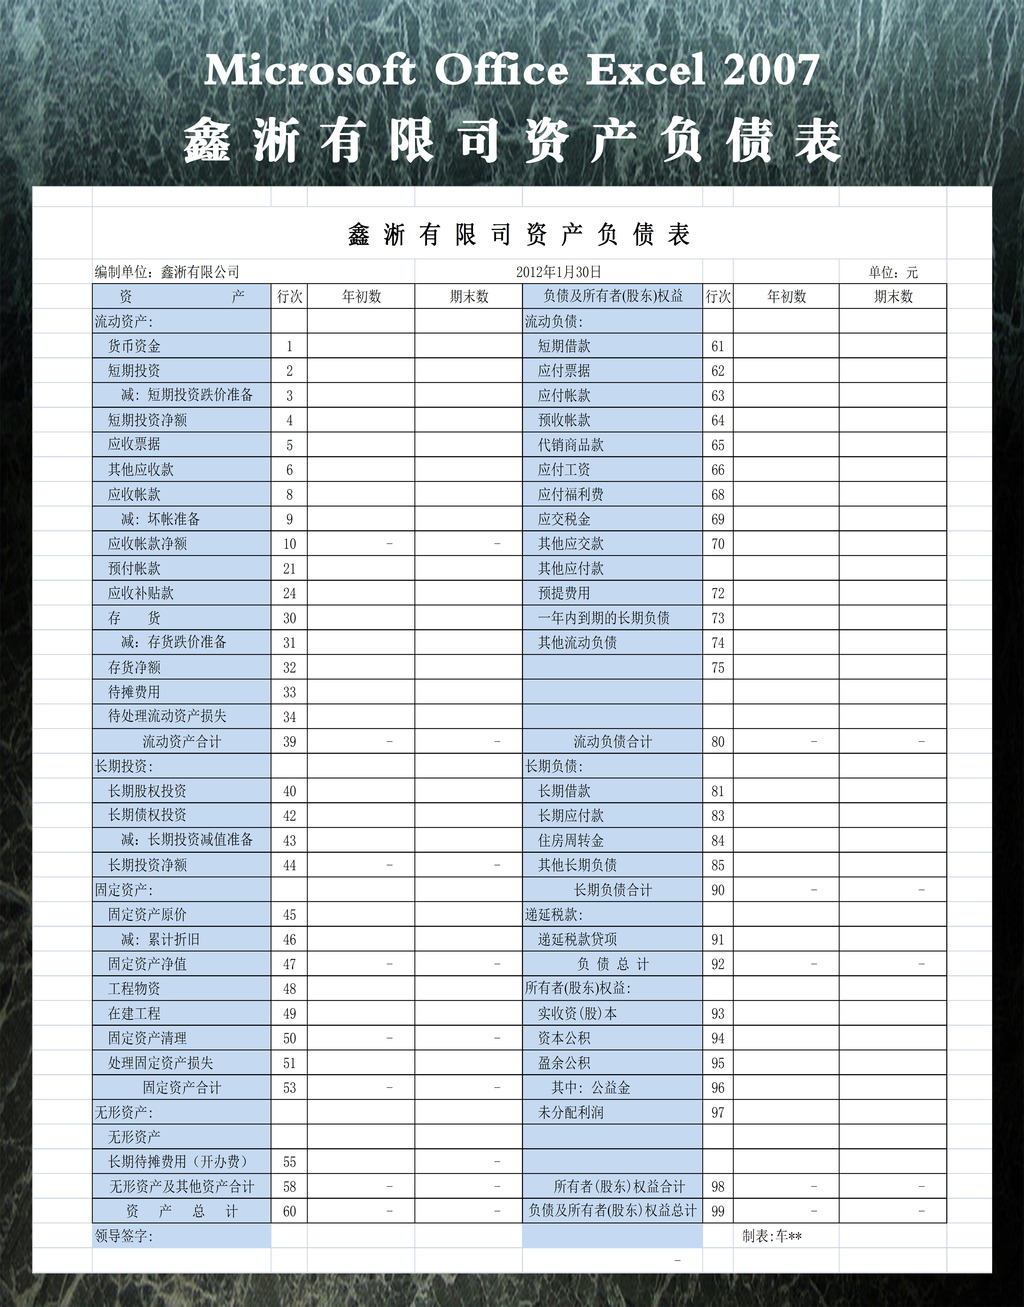 鑫淅有限司资产负债表模板下载(图片编号:122